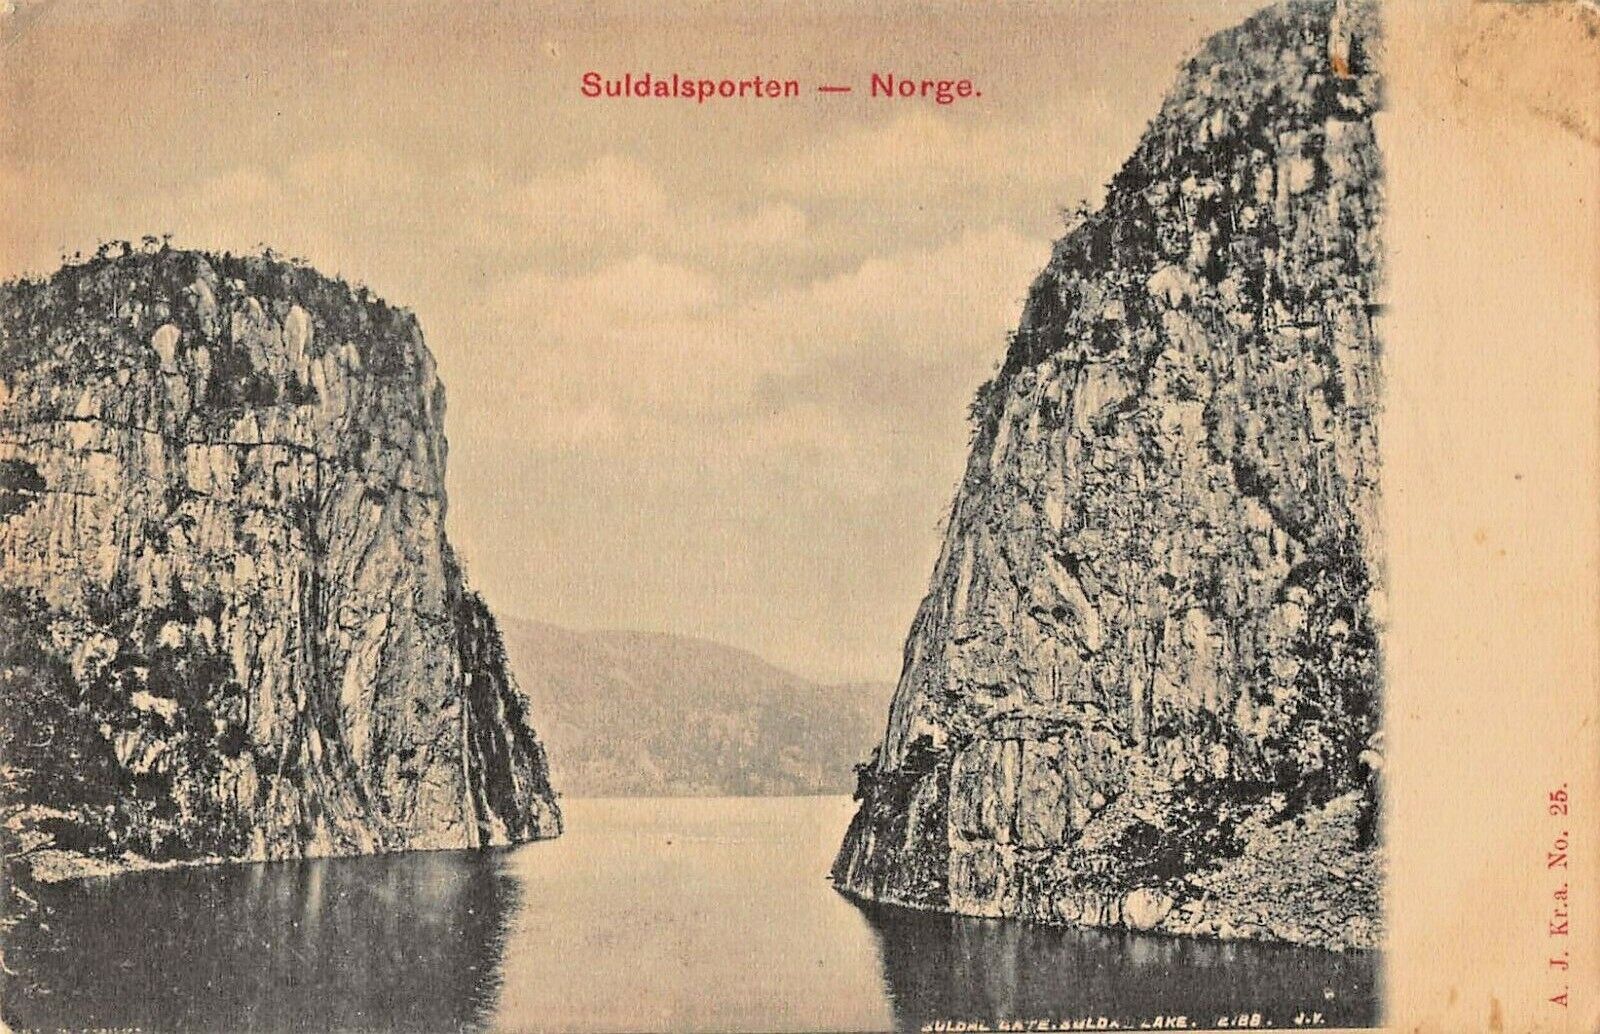 SULDALSPORTEN  ROGALAND NORWAY~SOLDAL LAKE~J V 1900s PHOTO POSTCARD